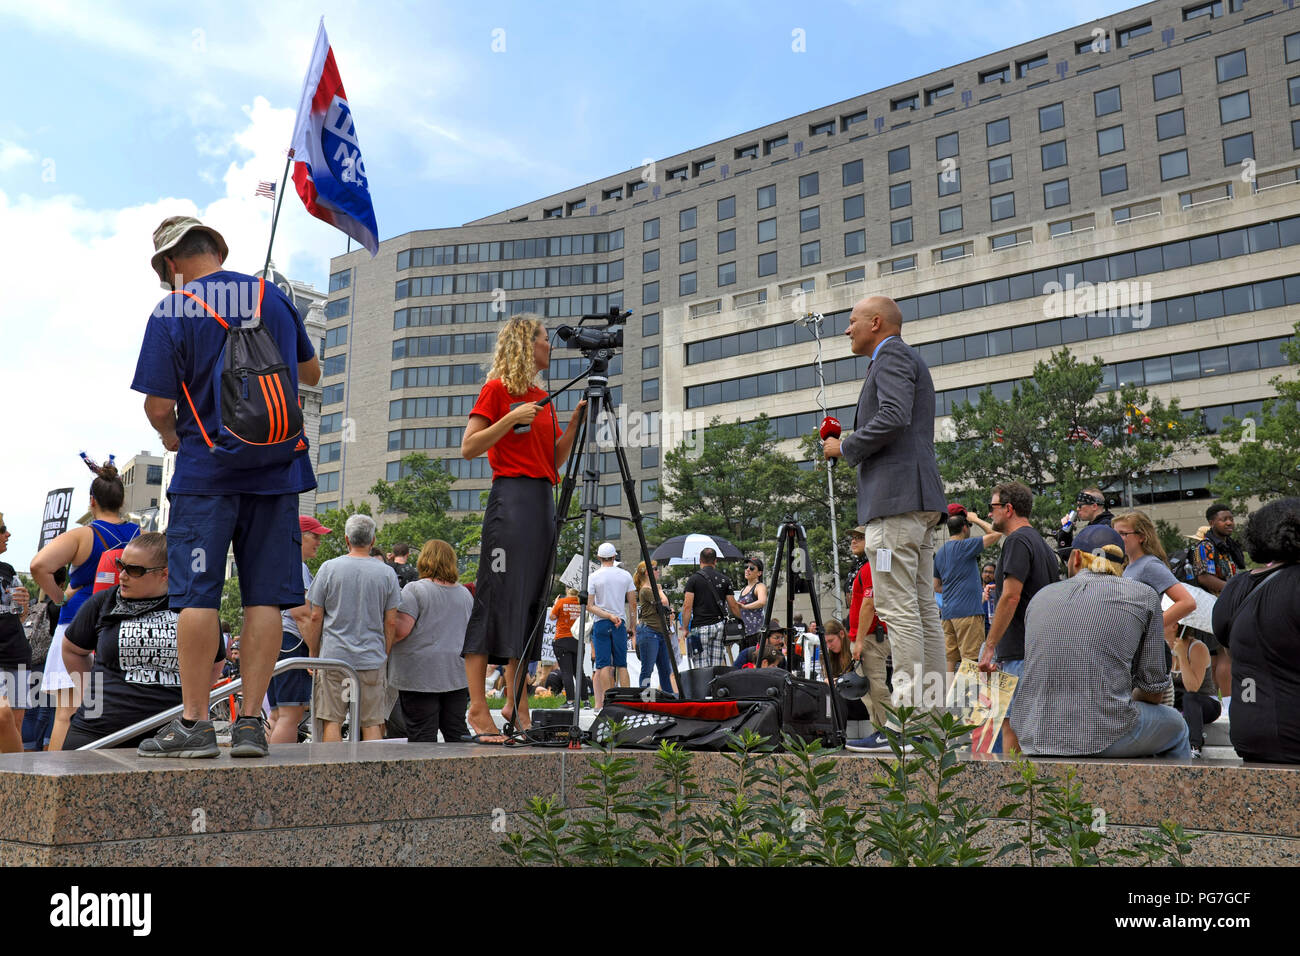 Los medios de televisión transmitido en vivo desde el parque de la libertad en Washington DC el 12 de agosto de 2018, donde el estadiaje de la protesta anti-Alt derecha está ocurriendo. Foto de stock